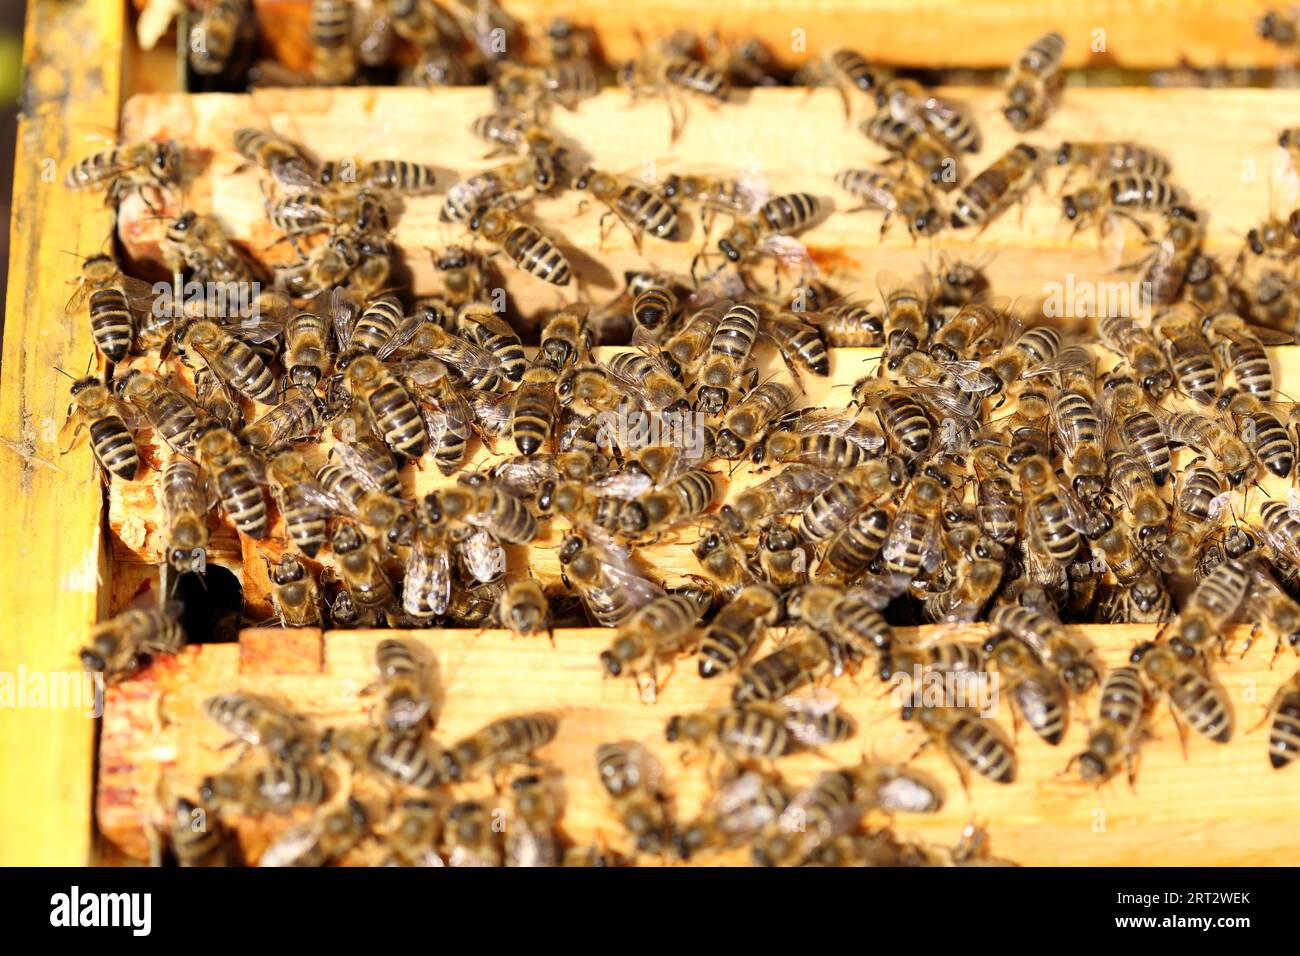 Many honey bees sit on the bee box Stock Photo